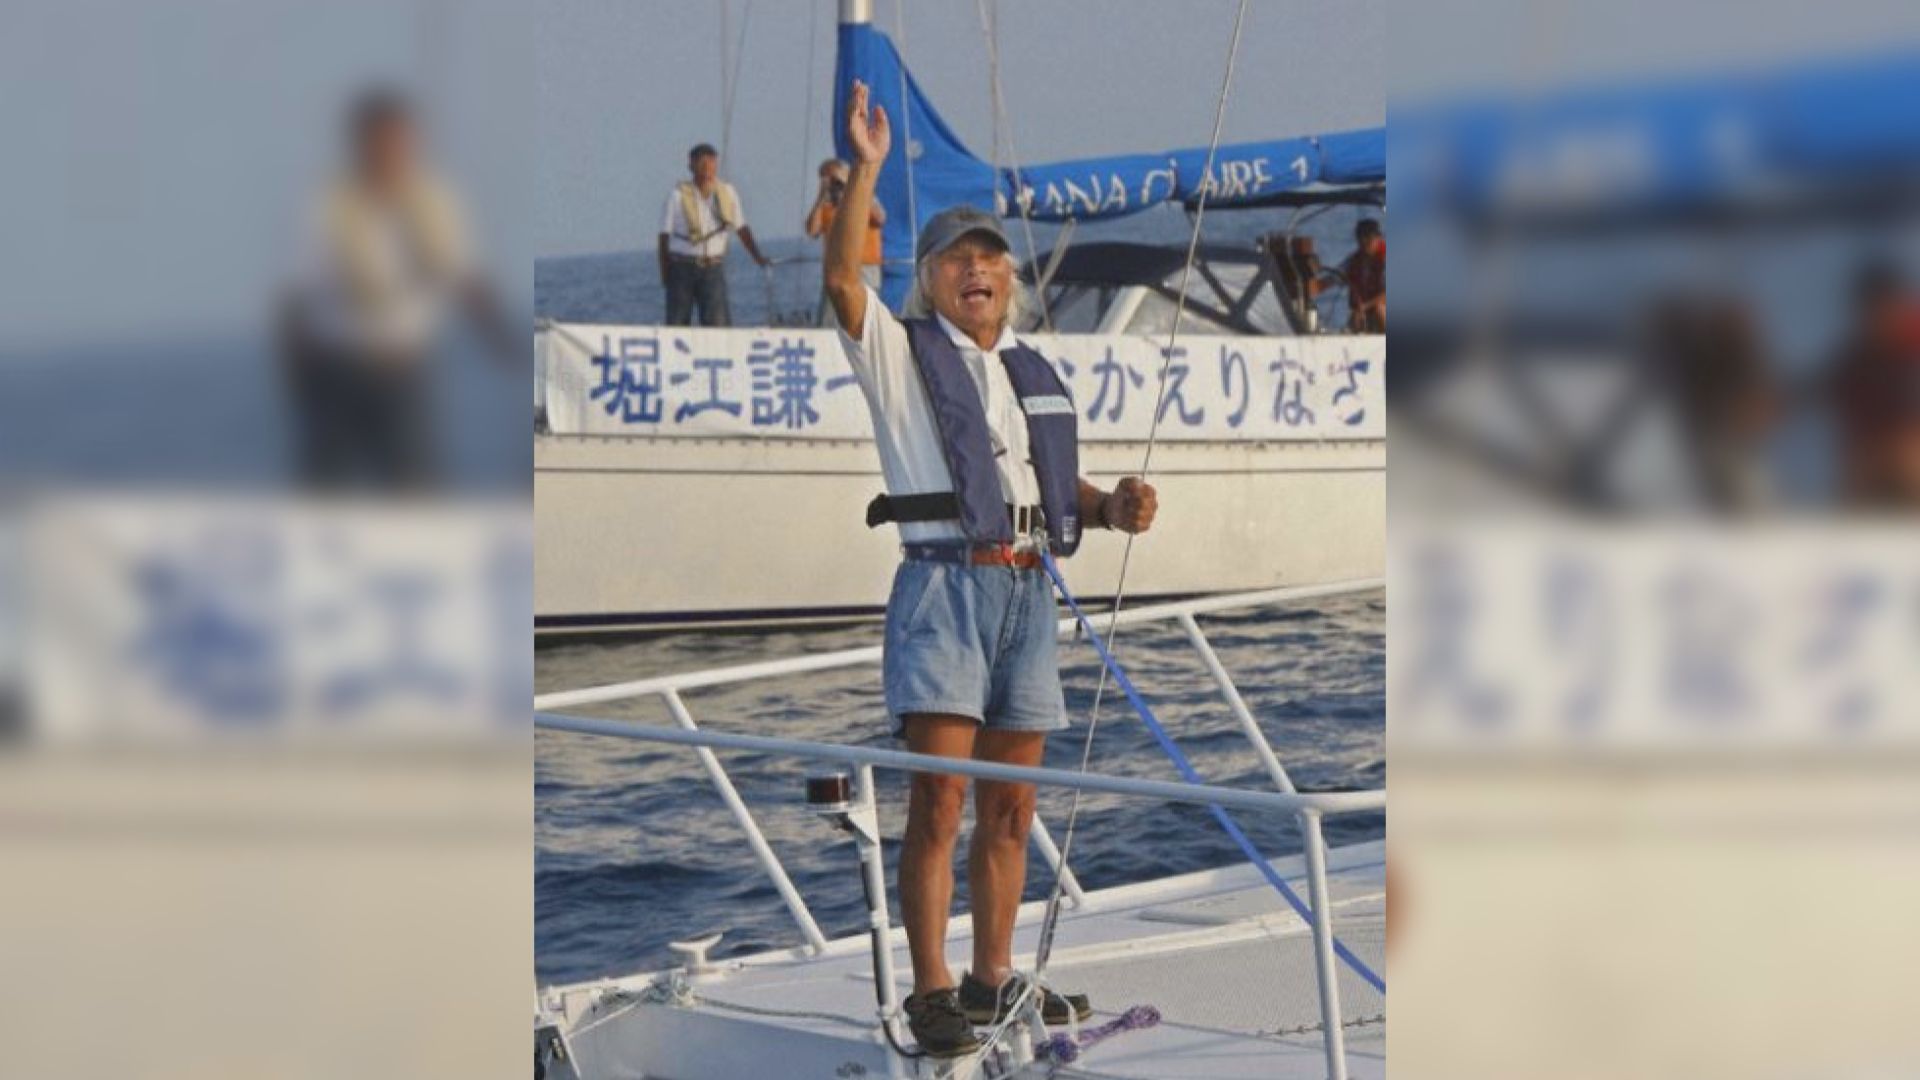 【環球薈報】日本83歲冒險家挑戰獨自駕駛帆船橫渡太平洋